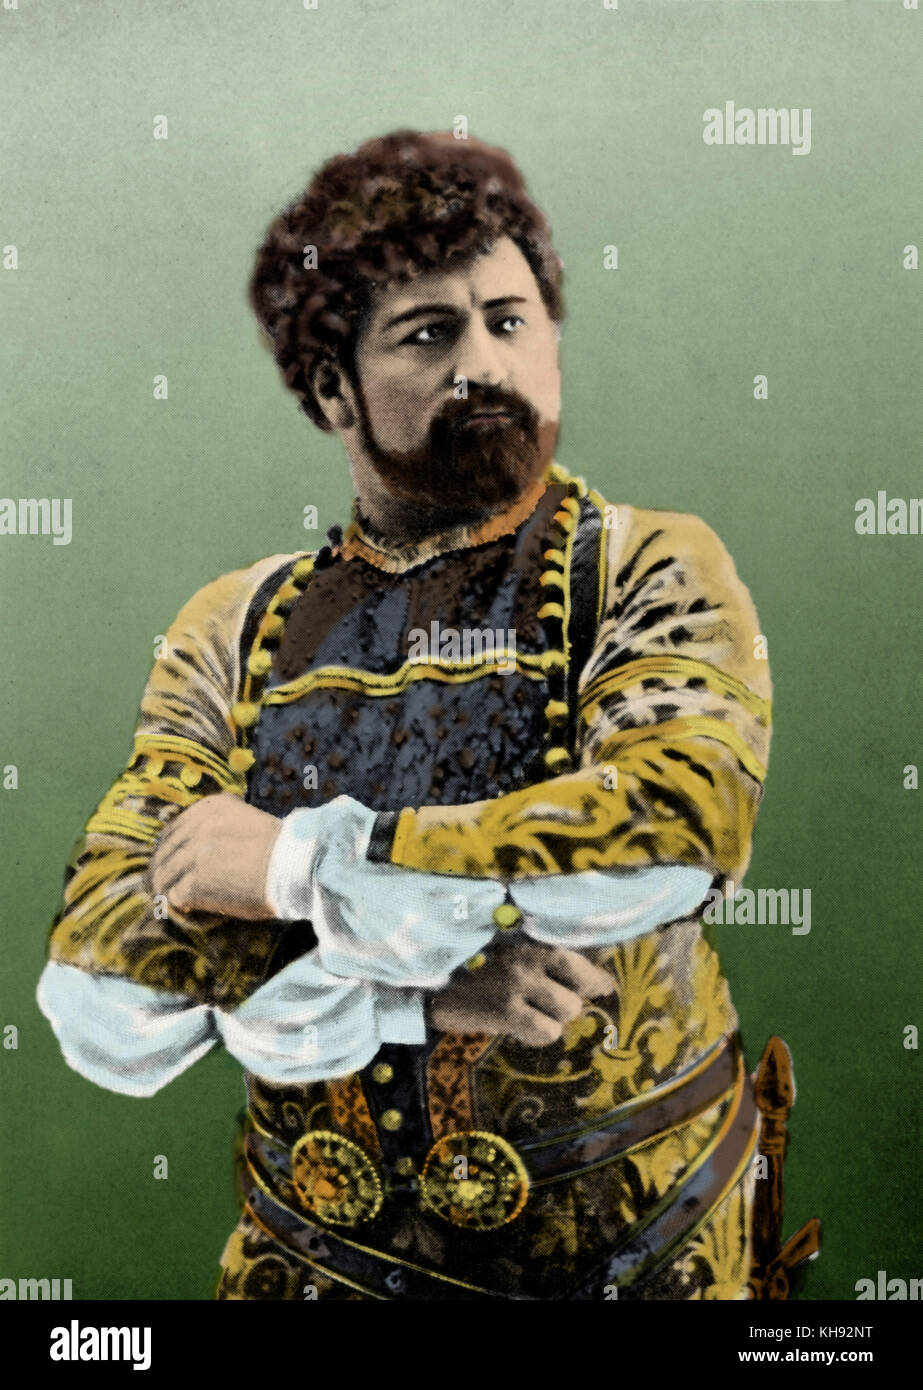 Francesco TAMAGNO, als Otello in Verdis Oper "Otello" italienische Tenor (1850-1905) Stockfoto